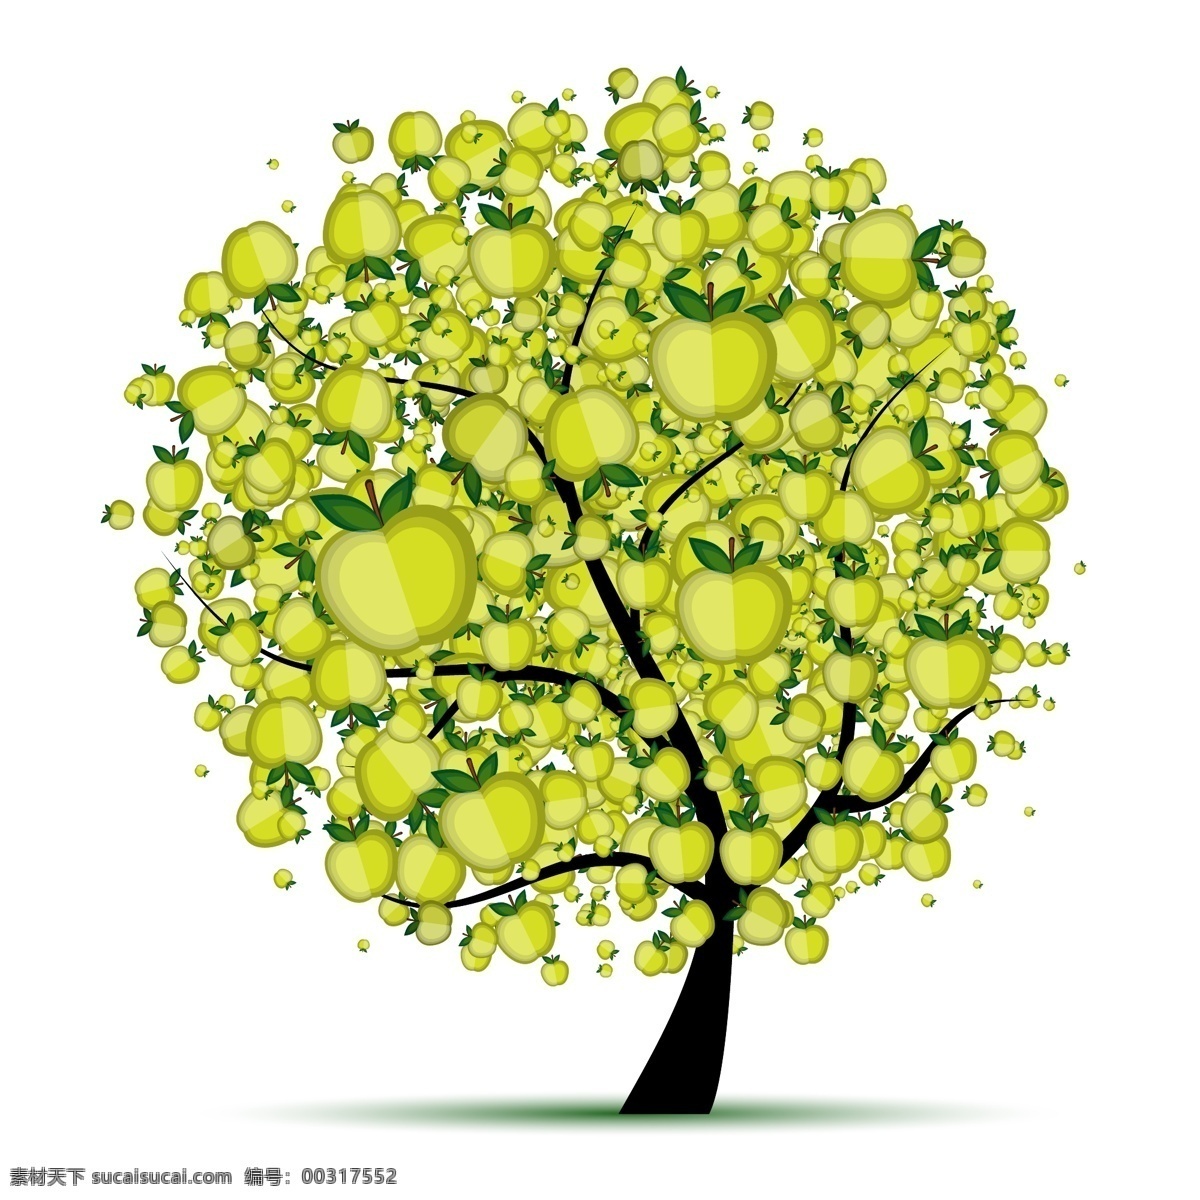 树木 树叶 矢量 果树 苹果 绿树 绿叶 大树 清新 自然 环保 植物 矢量素材 树木树叶 生物世界